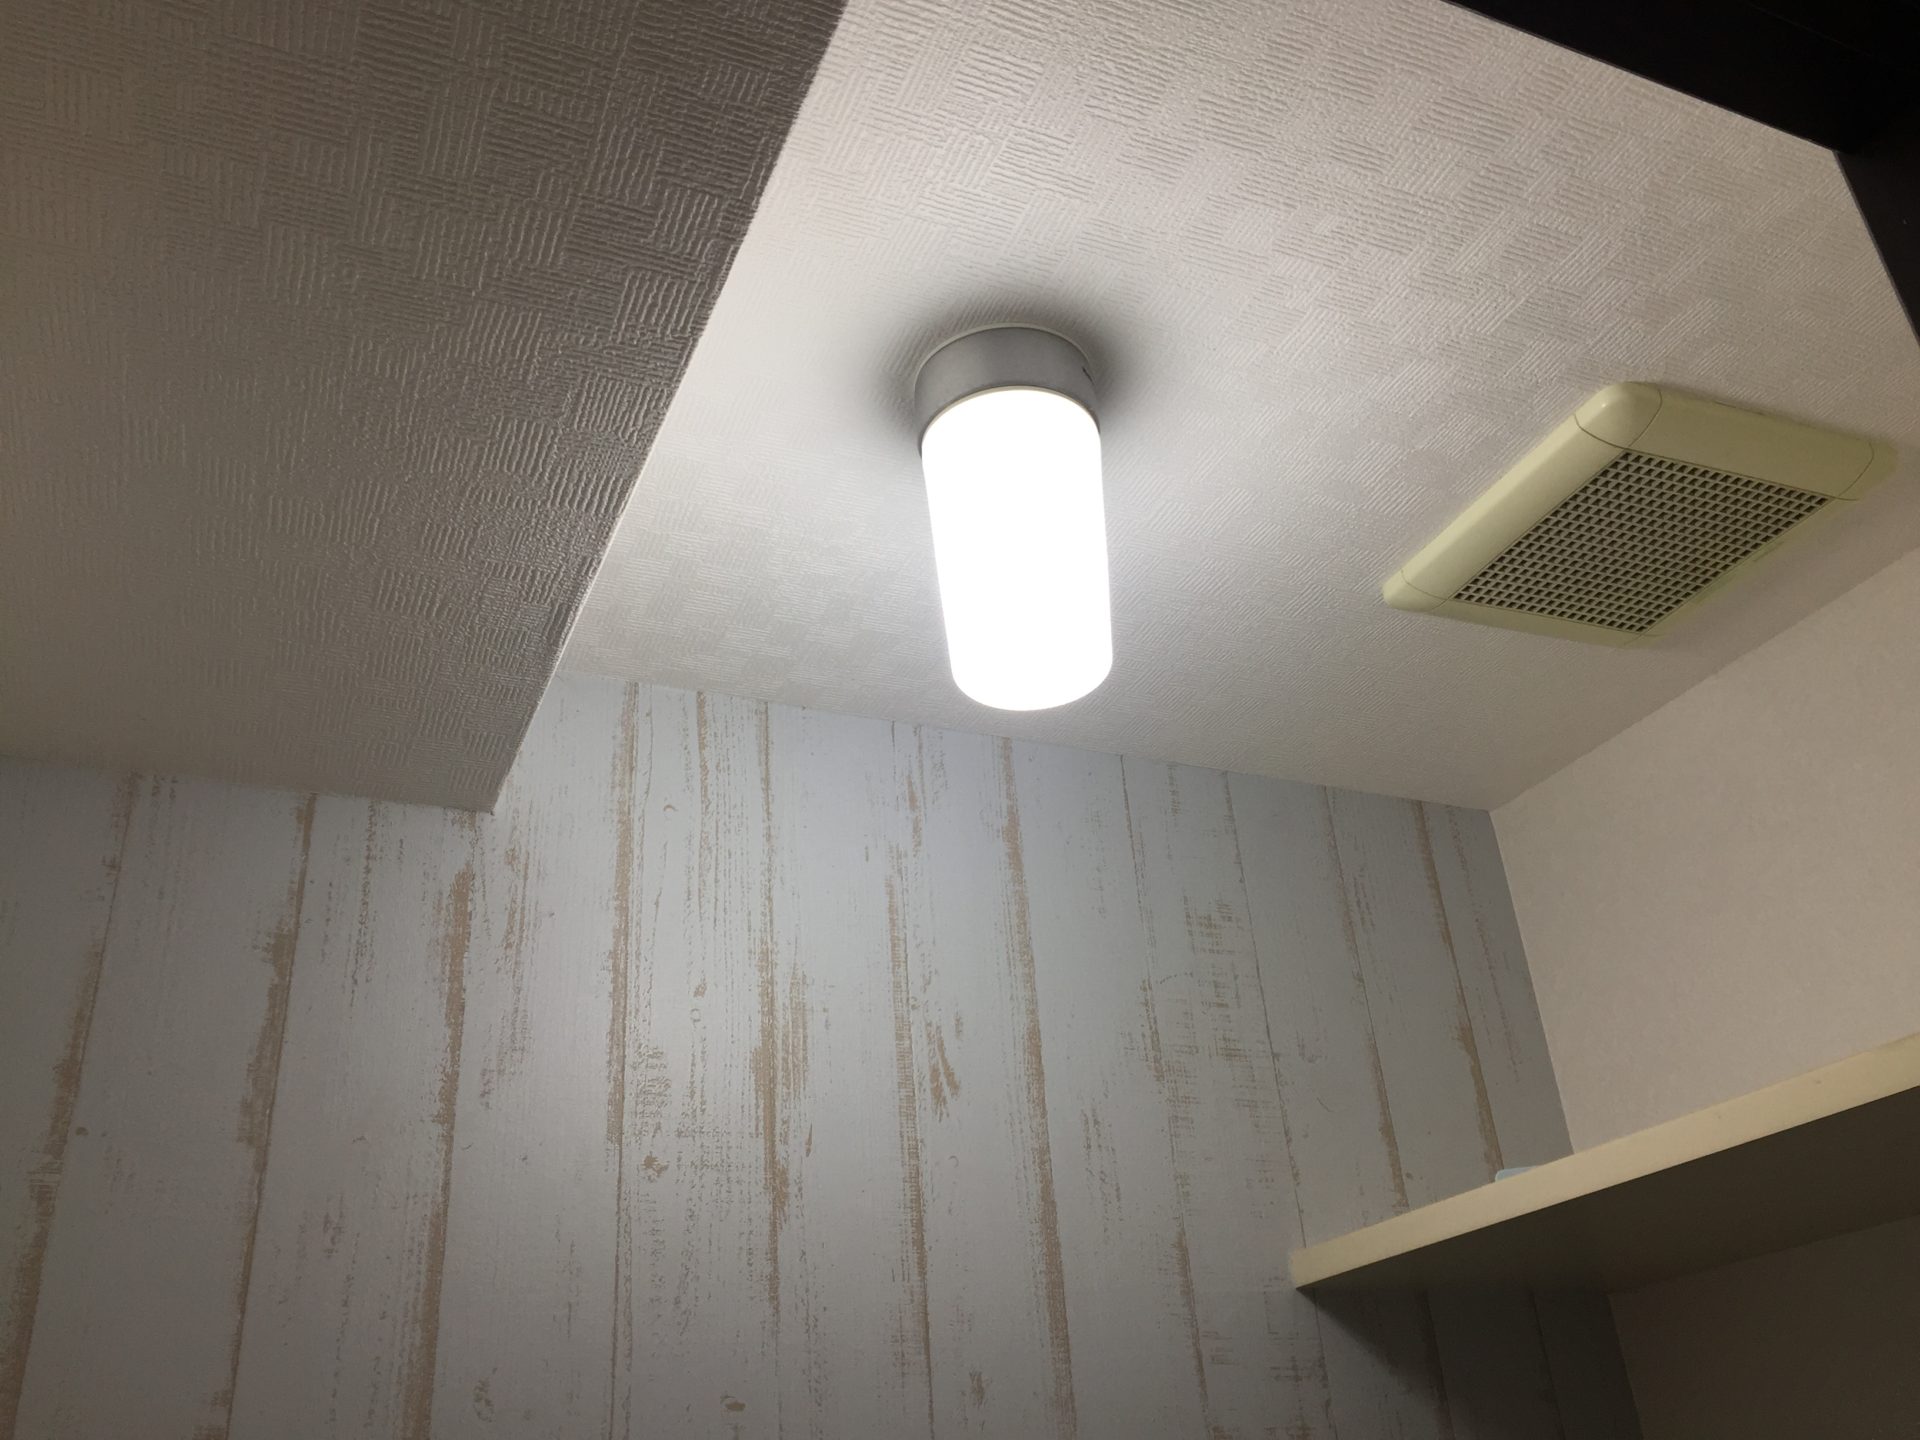 Diy トイレの照明を自動点滅 空気清浄機能付きの物に交換しました 簡単に交換できます トイレの照明を従来の電球式のものを取り外し 人感センサーのついたものに交換したいと思います こちらの照明は人感センサーで人が近づくと自動的に照明が点灯するもので また